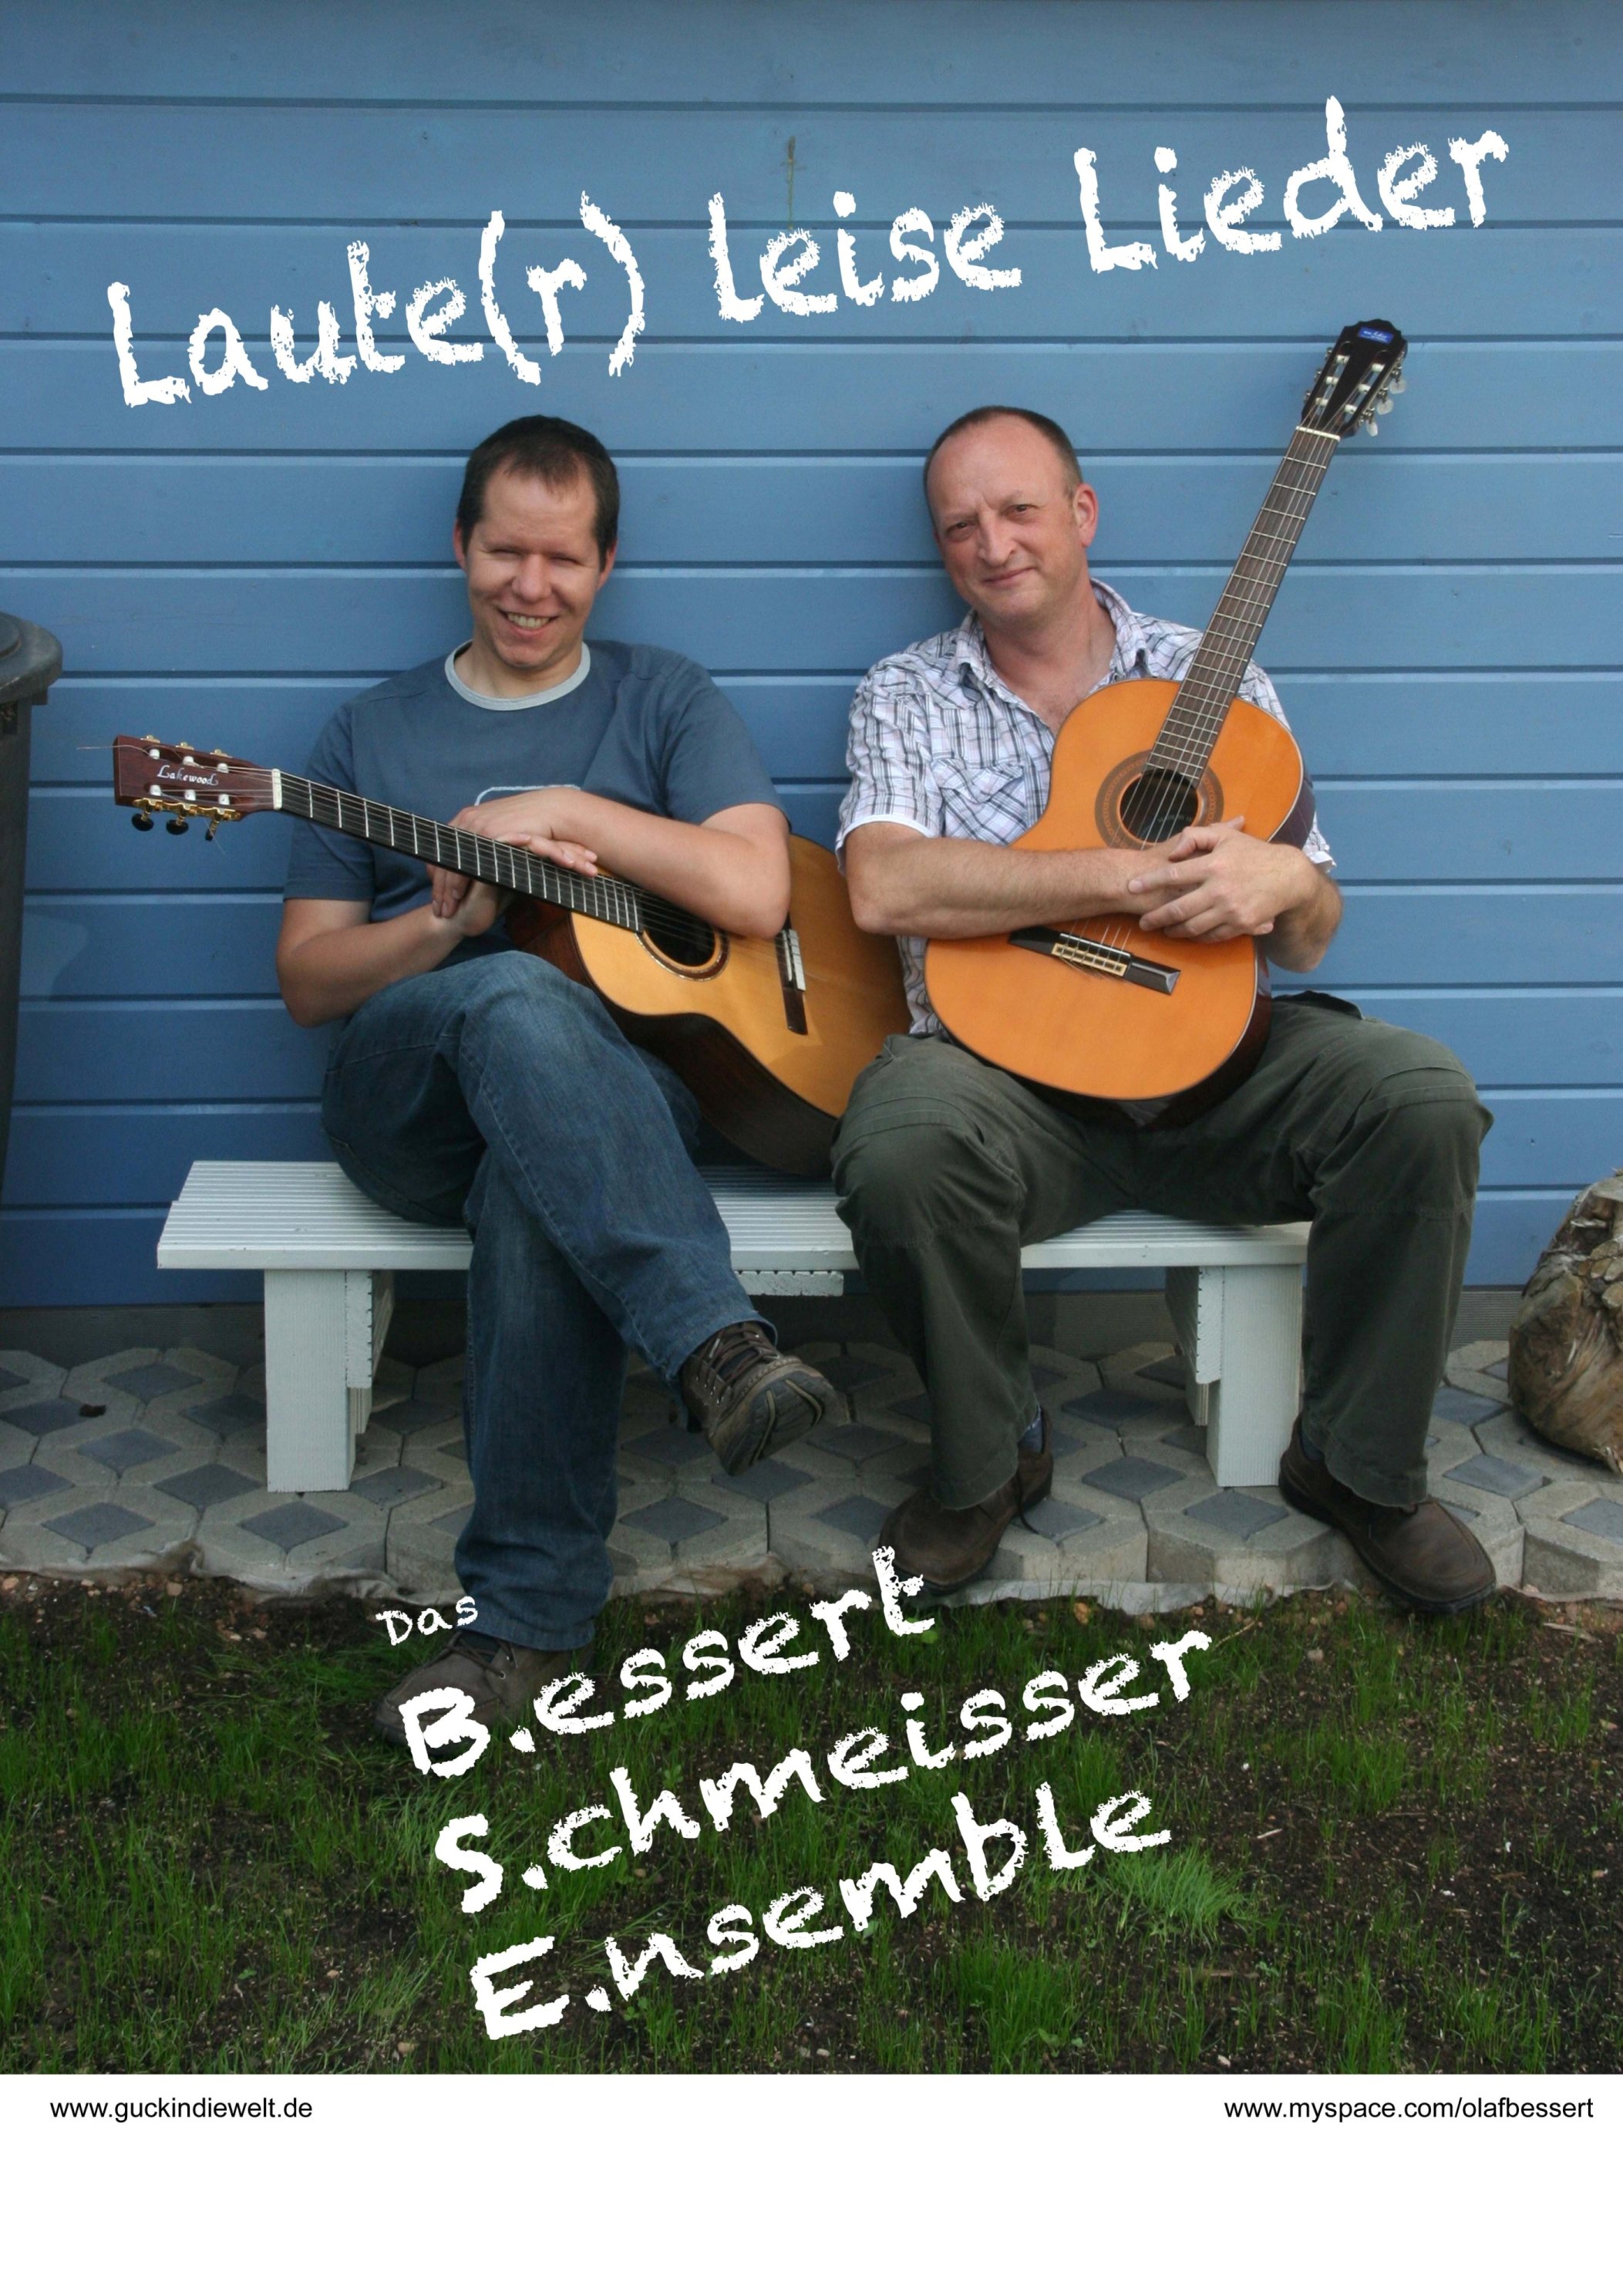 BSE - Dahinter verbergen sich Olaf Bessert & Alex Schmeisser - in einem gemeinsamen Programm.
                                                                                     
                                            

